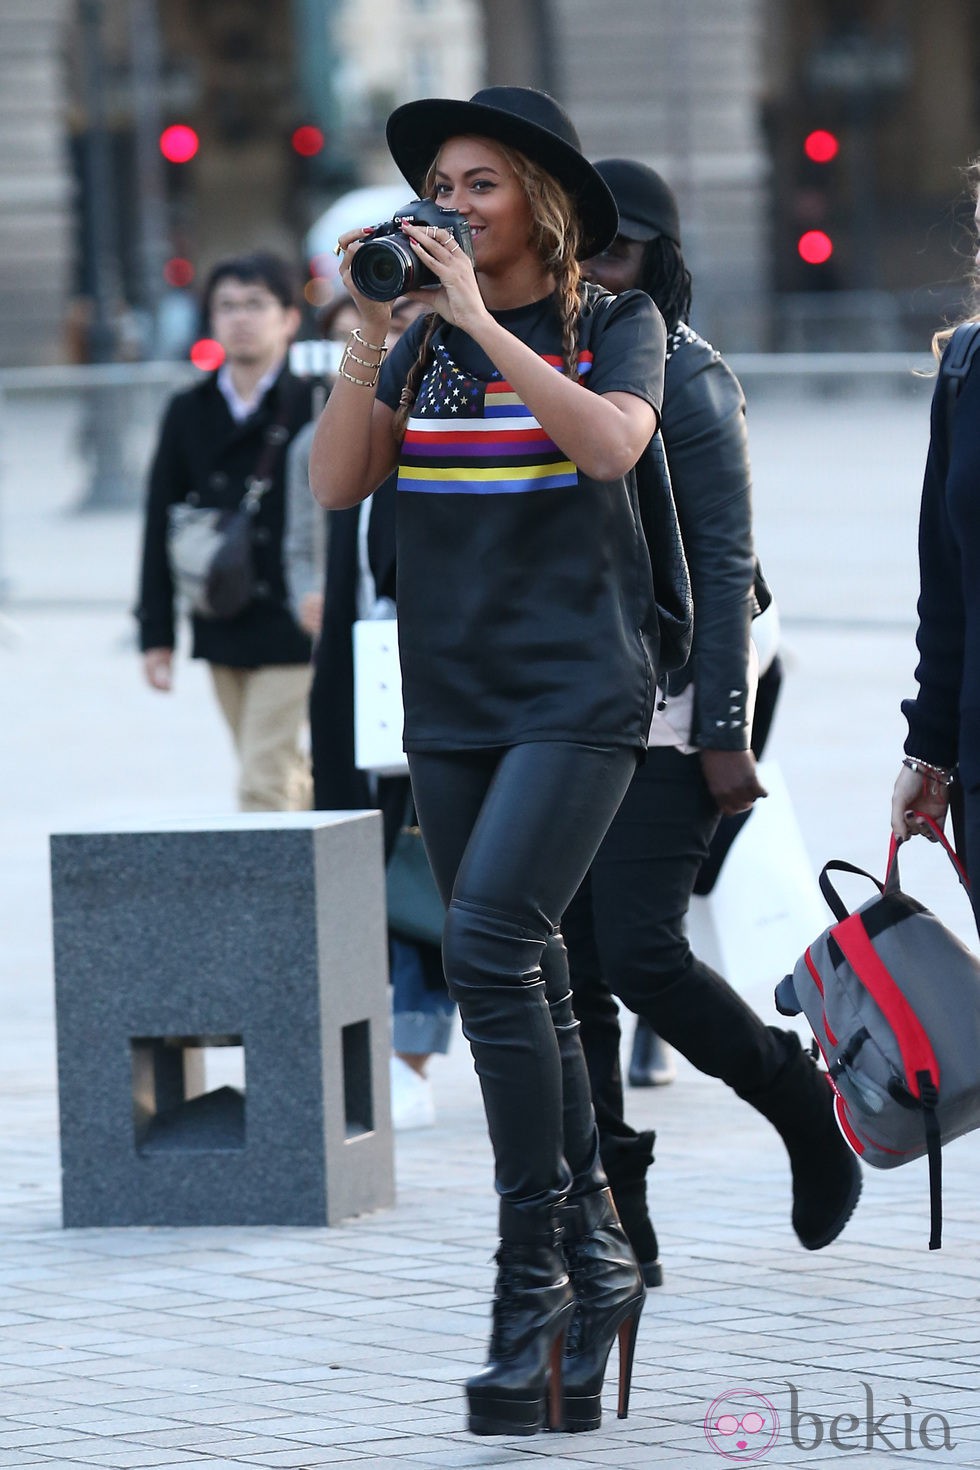 Beyoncé haciendo fotografas en los alrededores del Museo Louvre de París